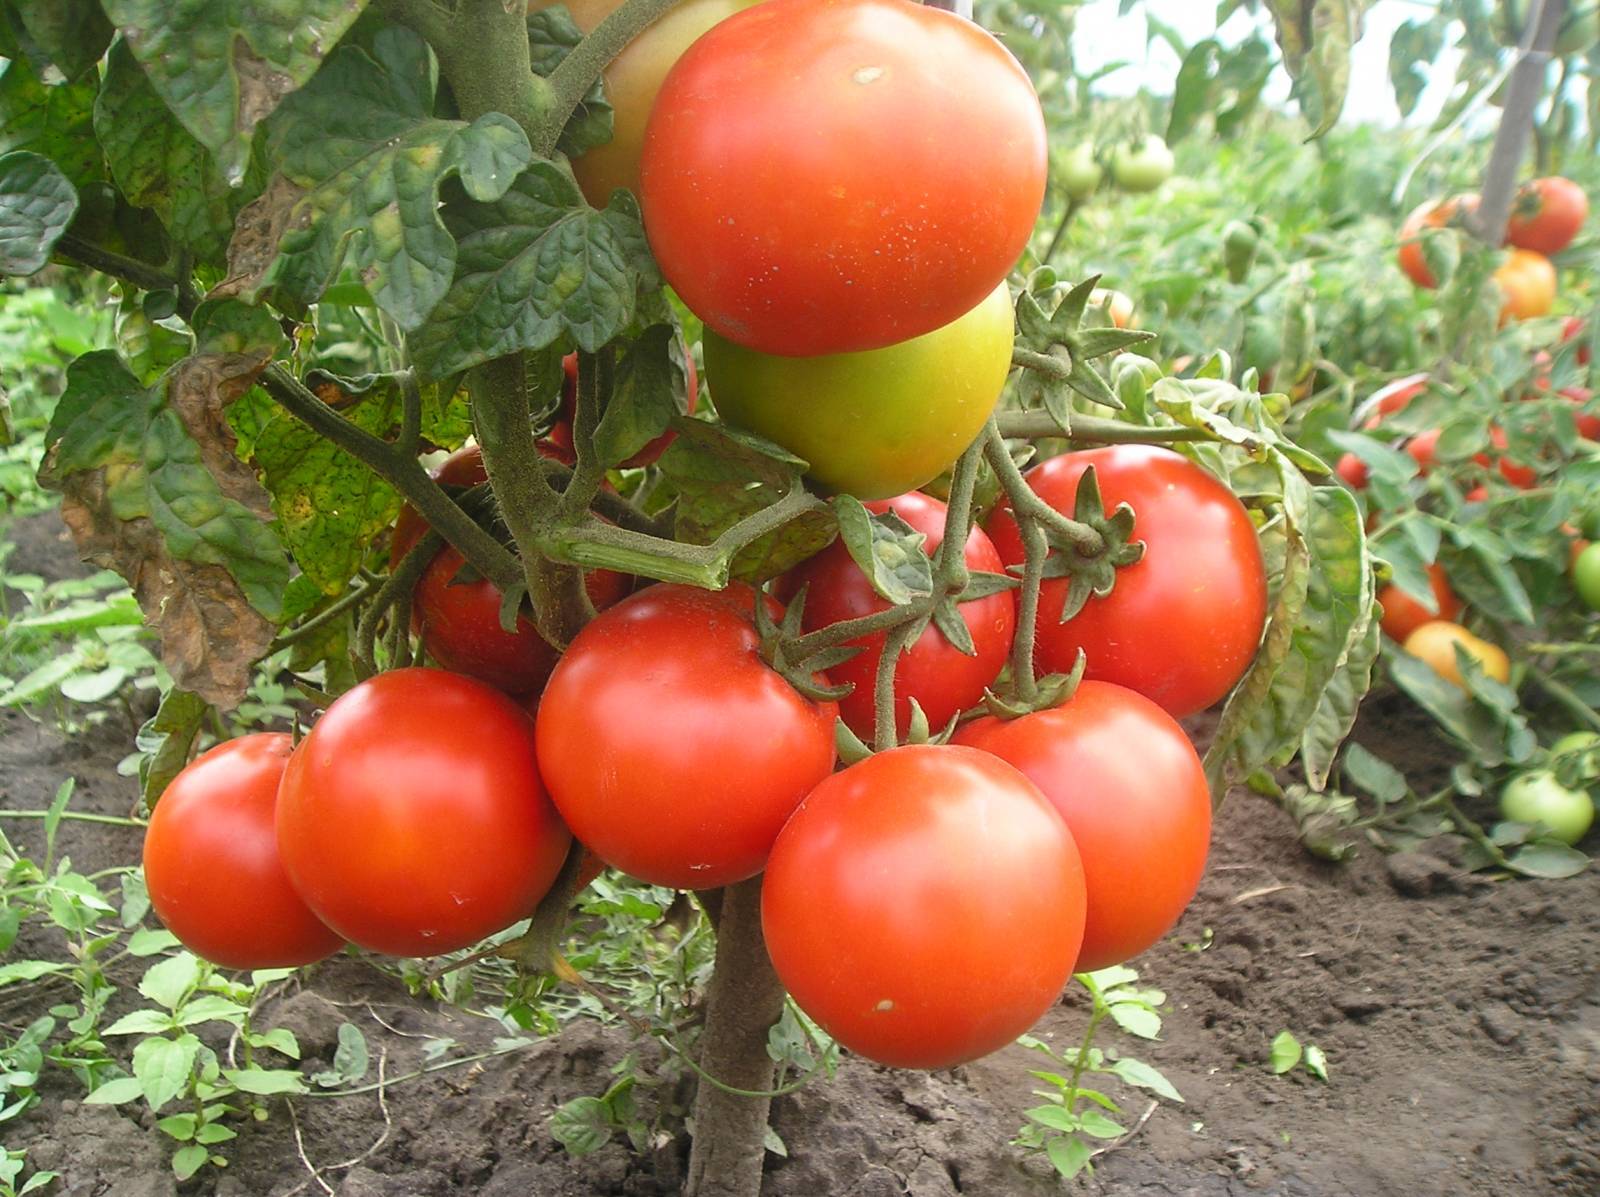 Лучшие сорта томатов для теплицы из поликарбоната